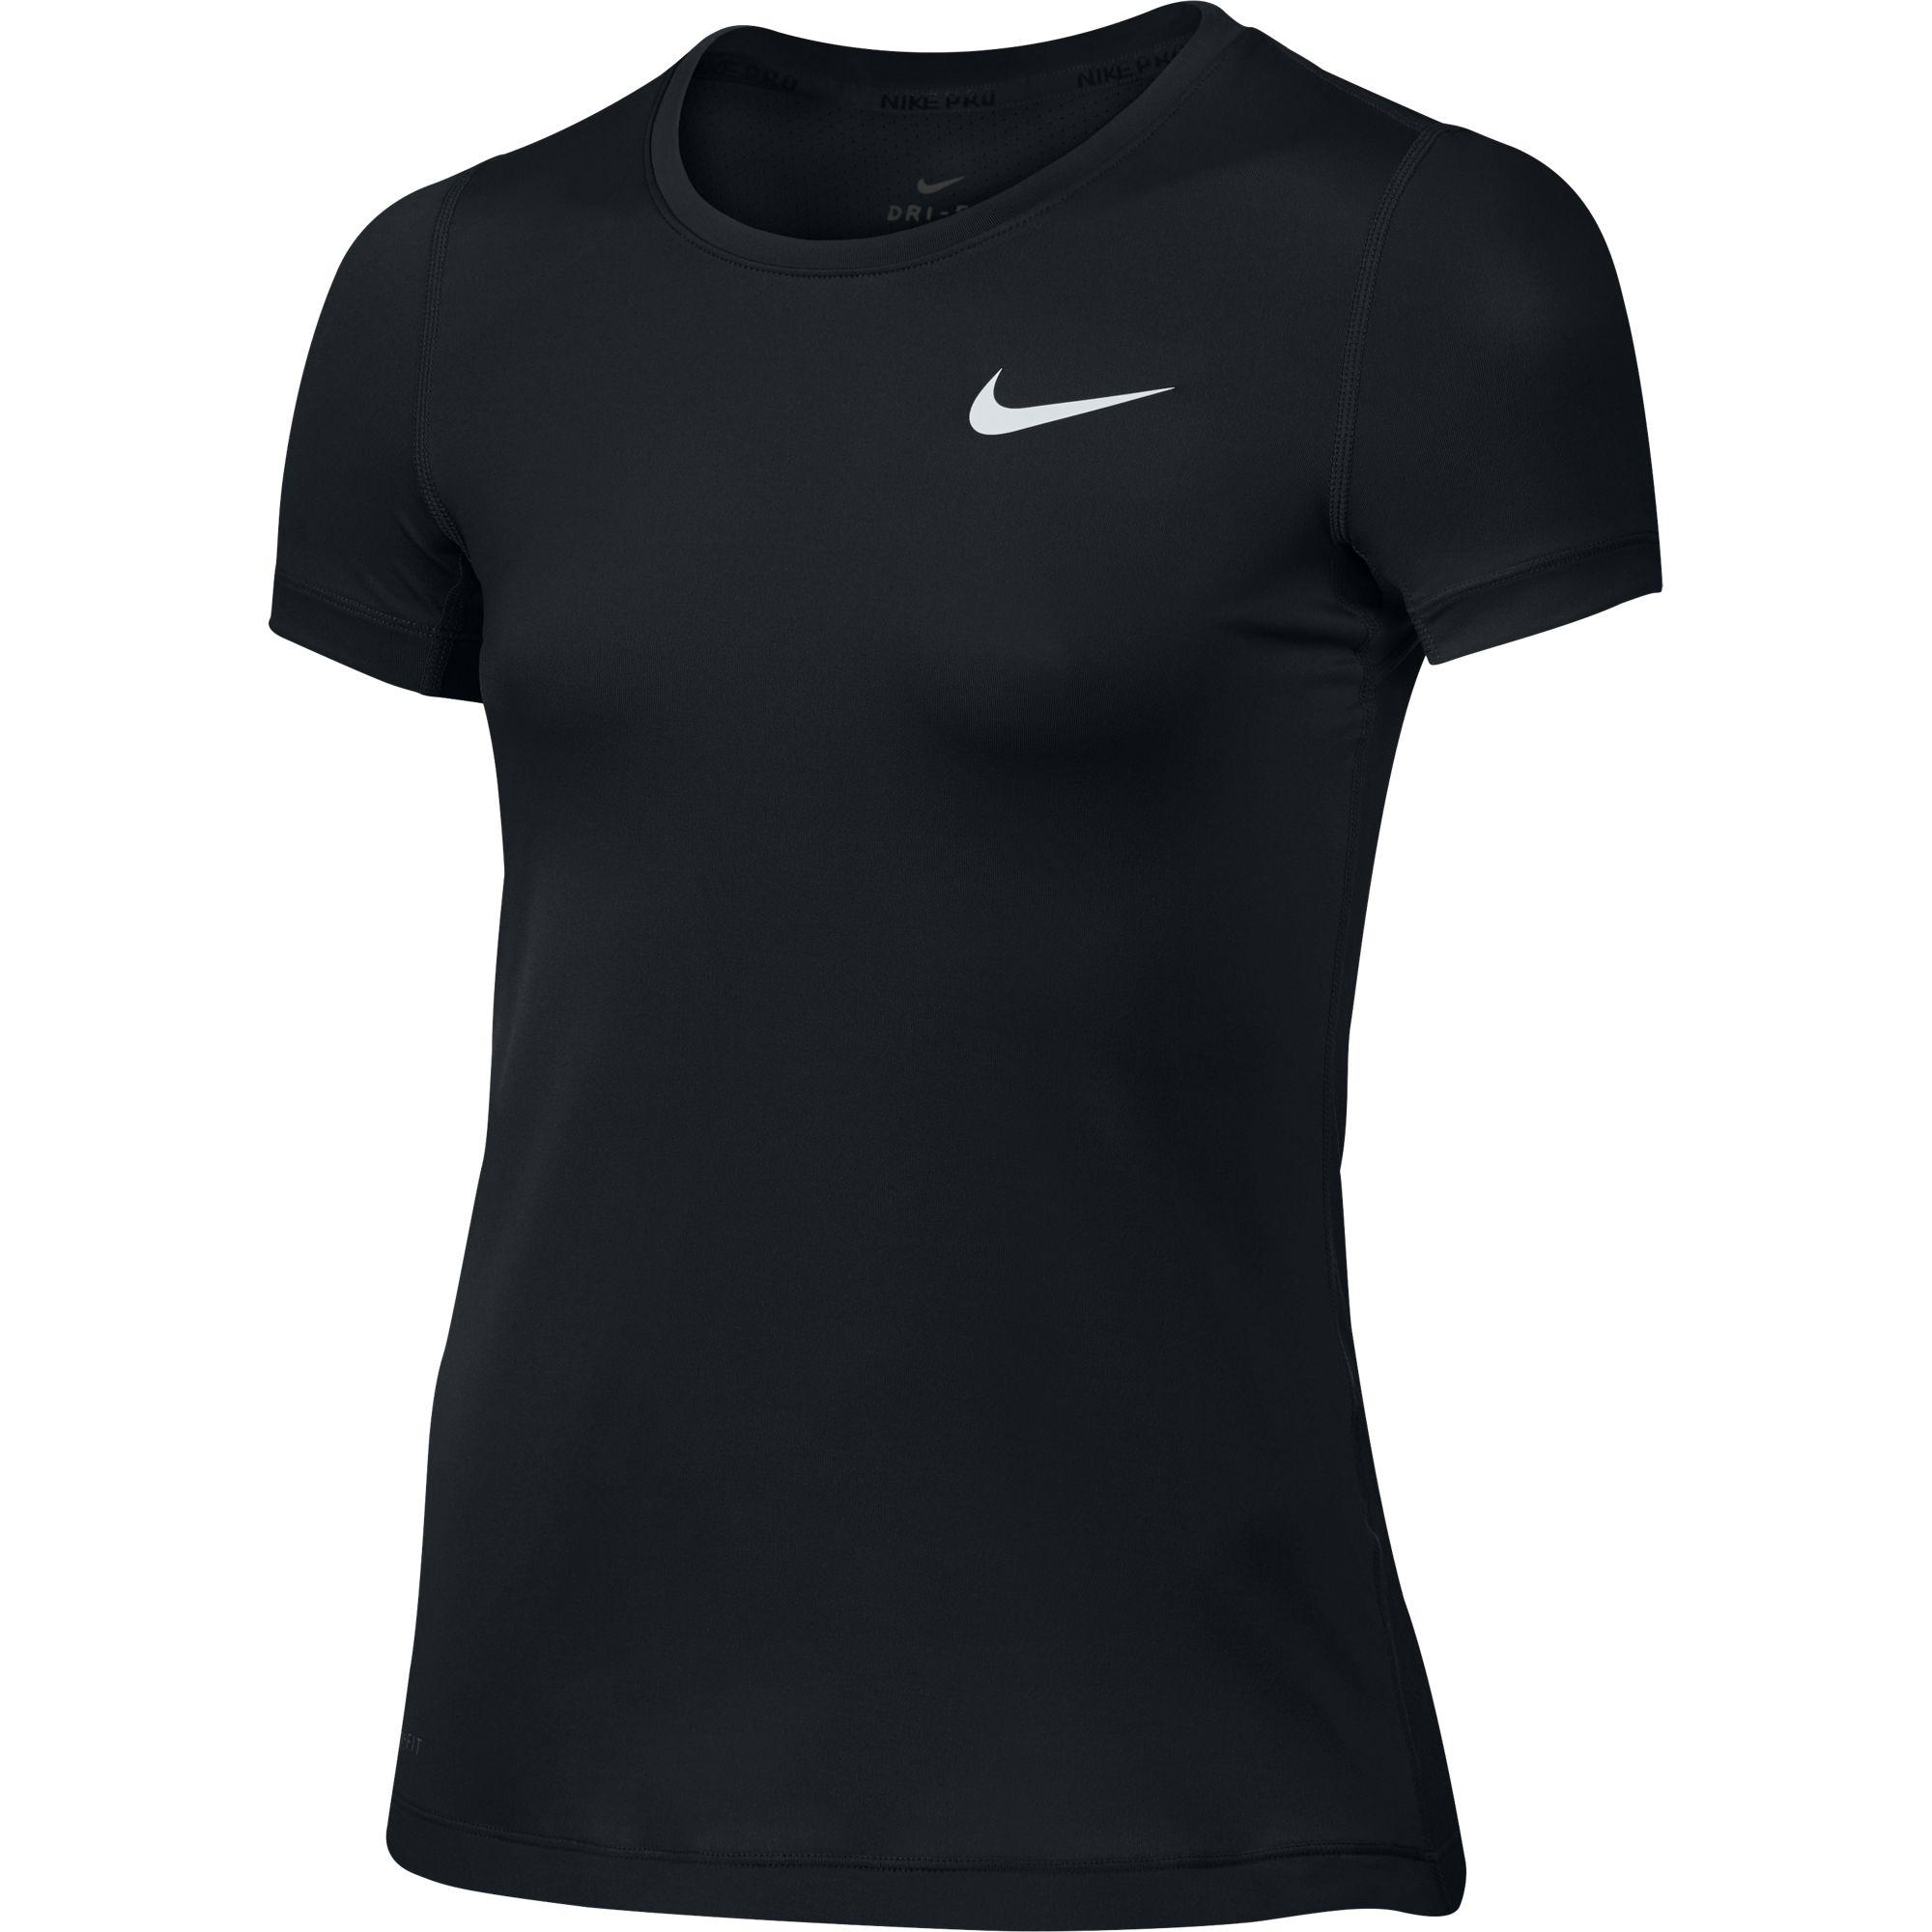 Nike Girls Pro Top - Black - Tennisnuts.com